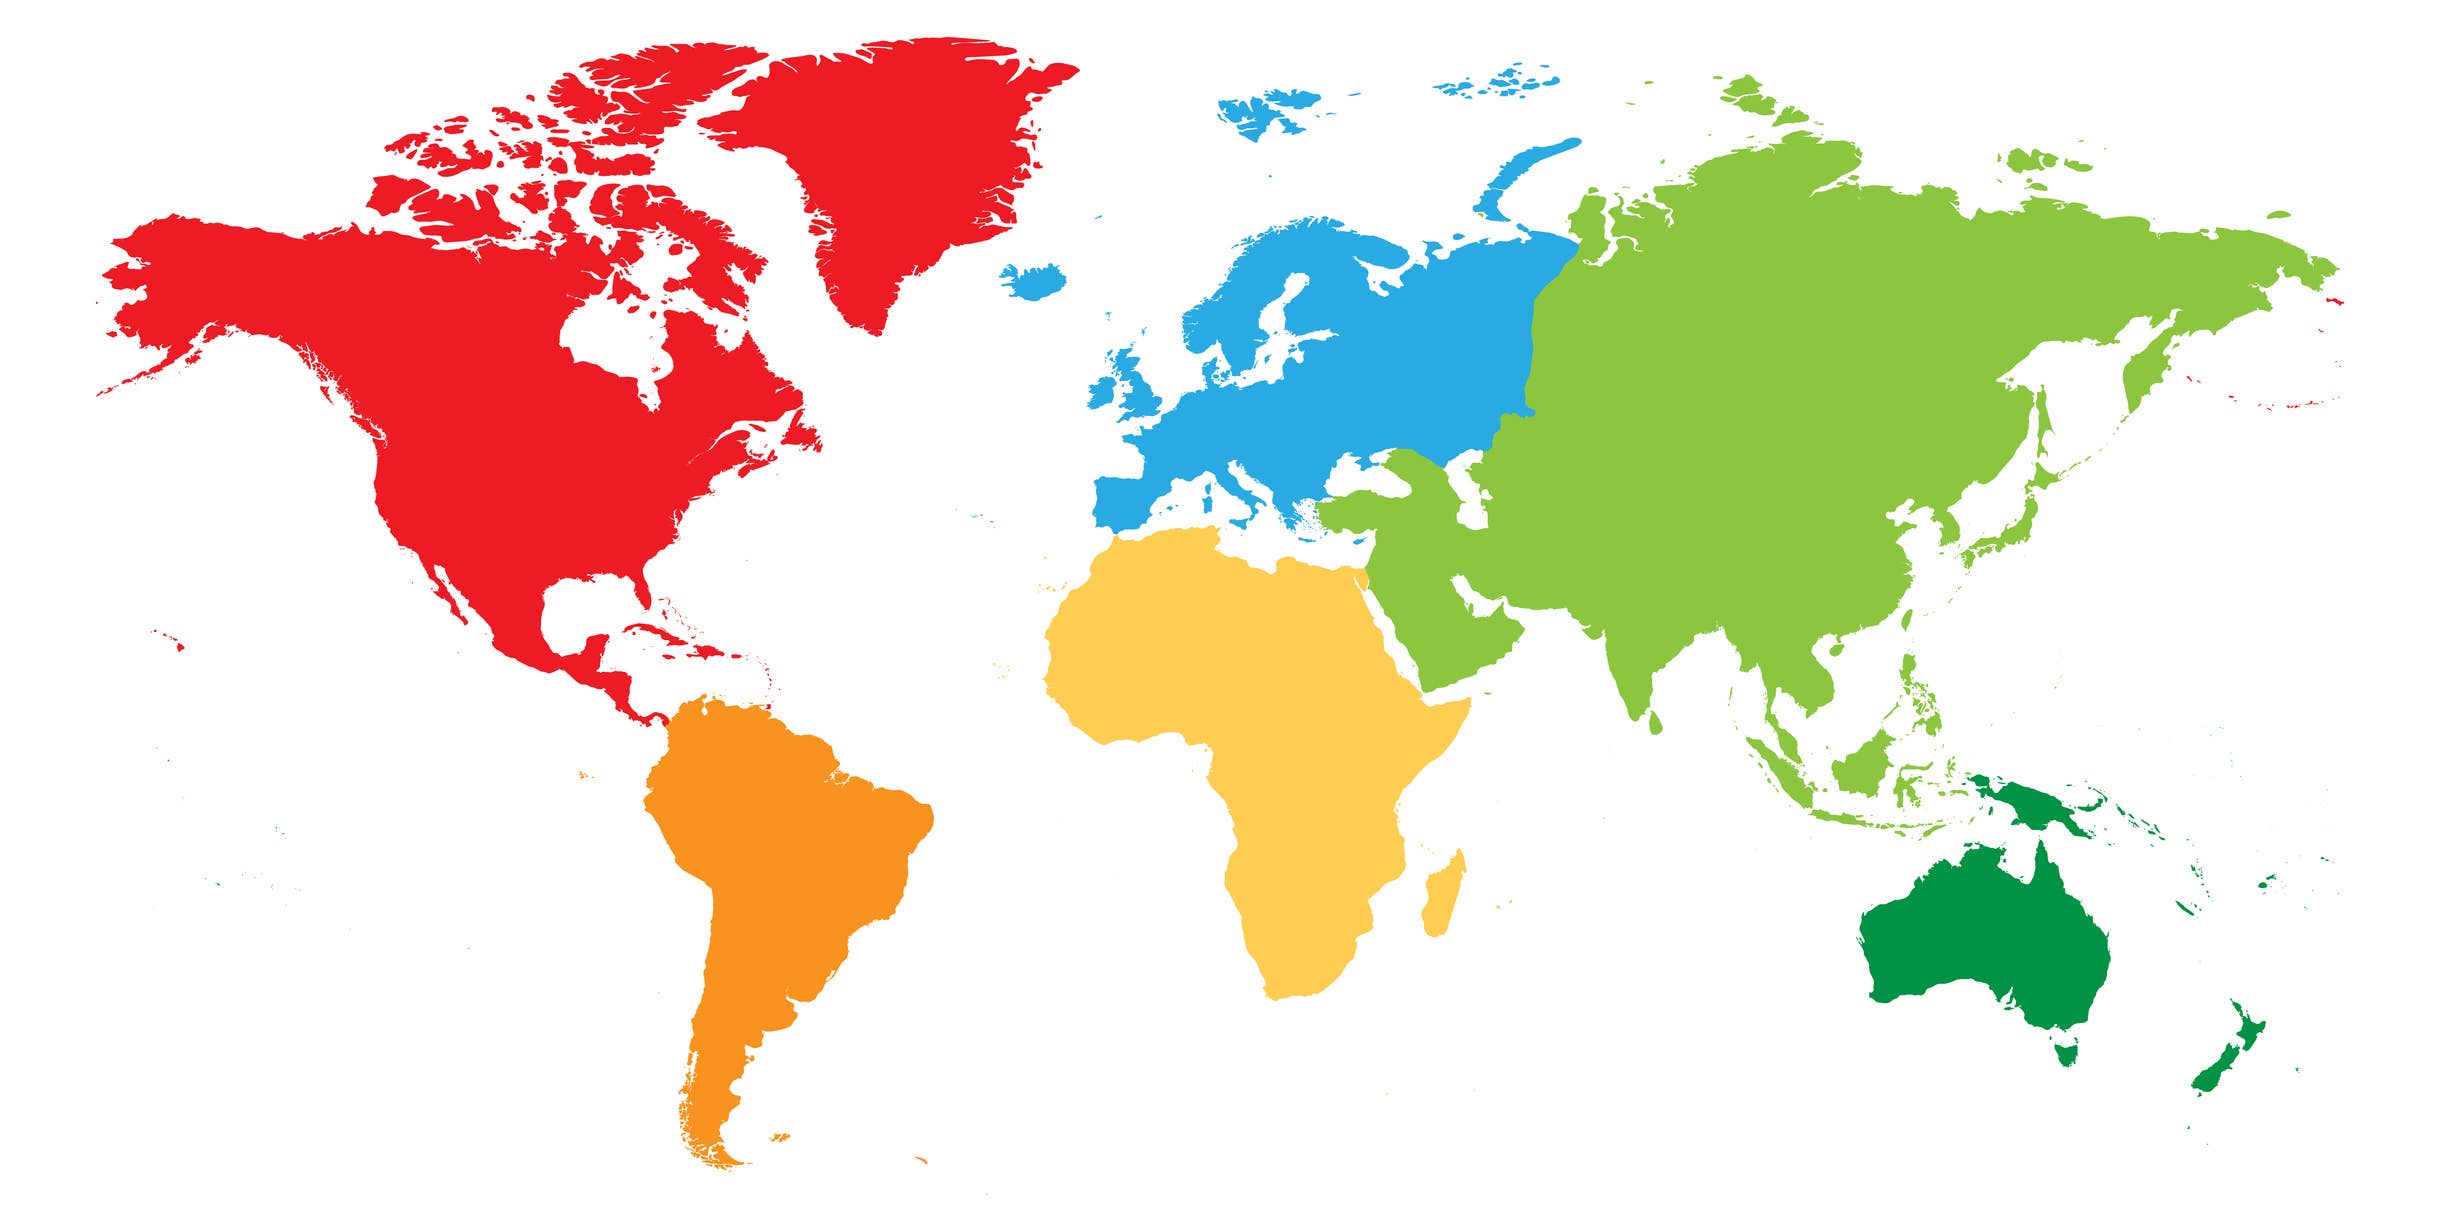 What people live on the continent. Карта континентов. Материки в цвете.